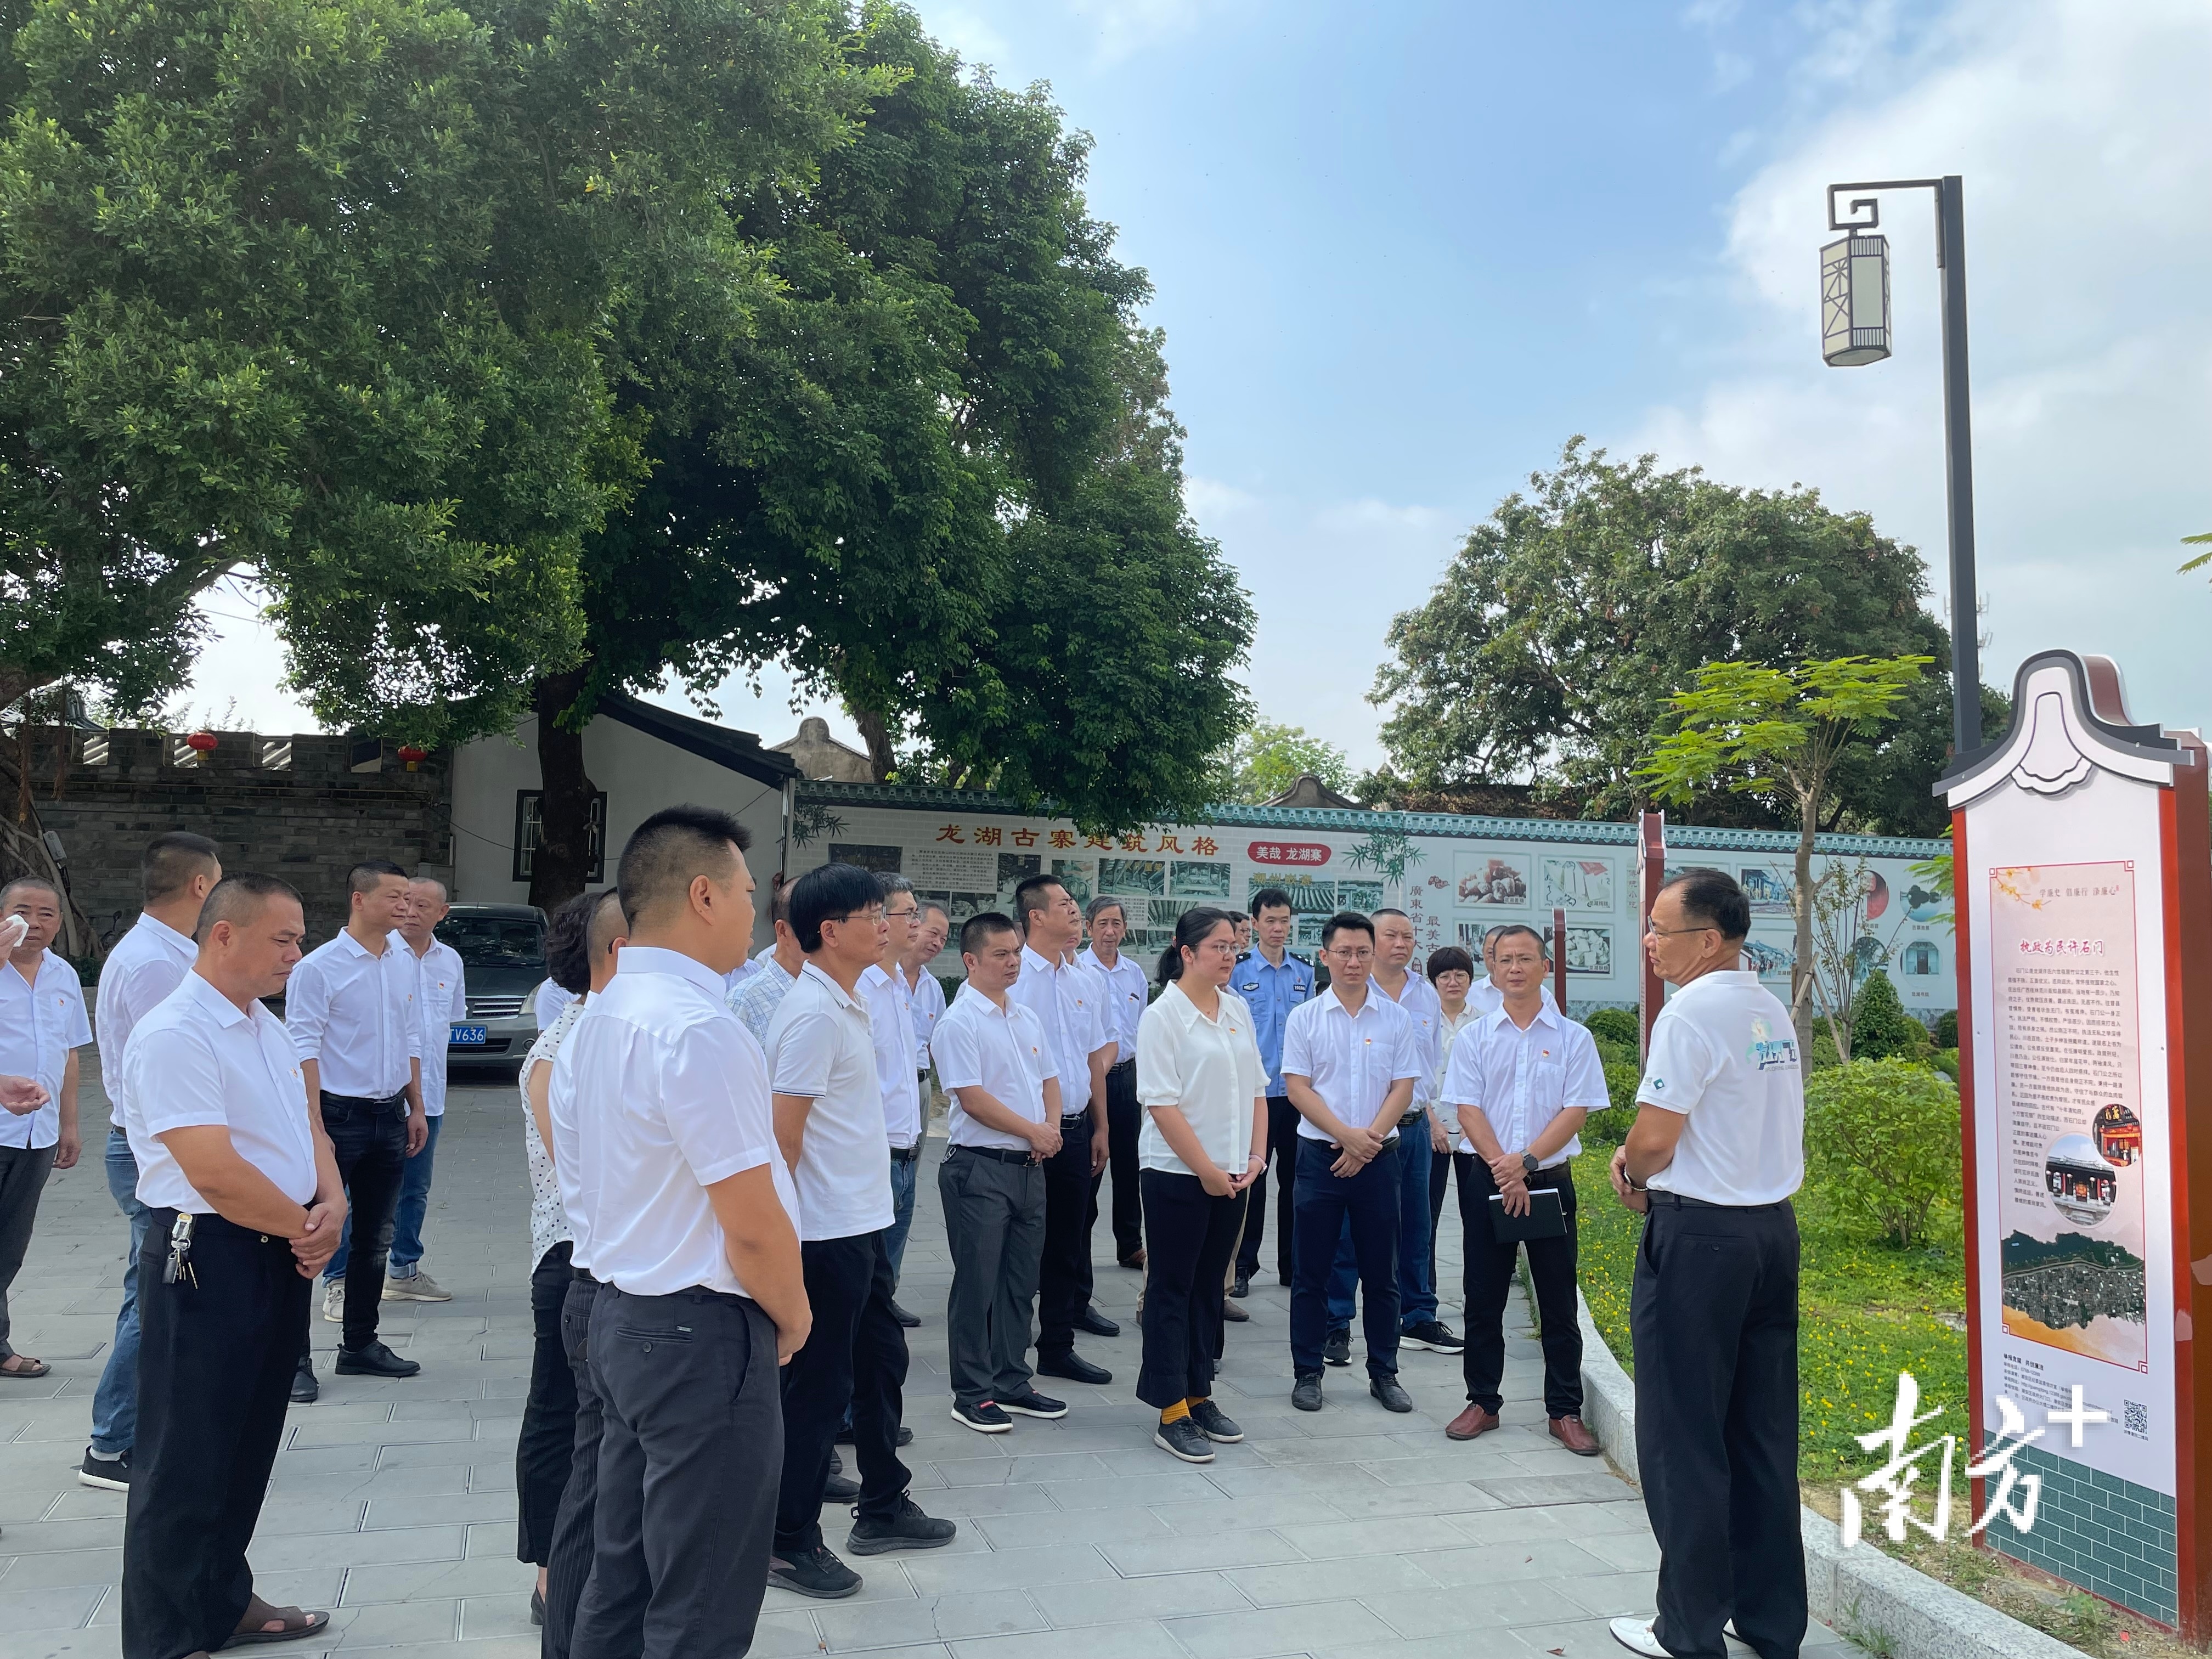 龙湖镇组织参观新建成的镇级廉政教育基地——龙湖古寨北门广场廉洁文化园地。